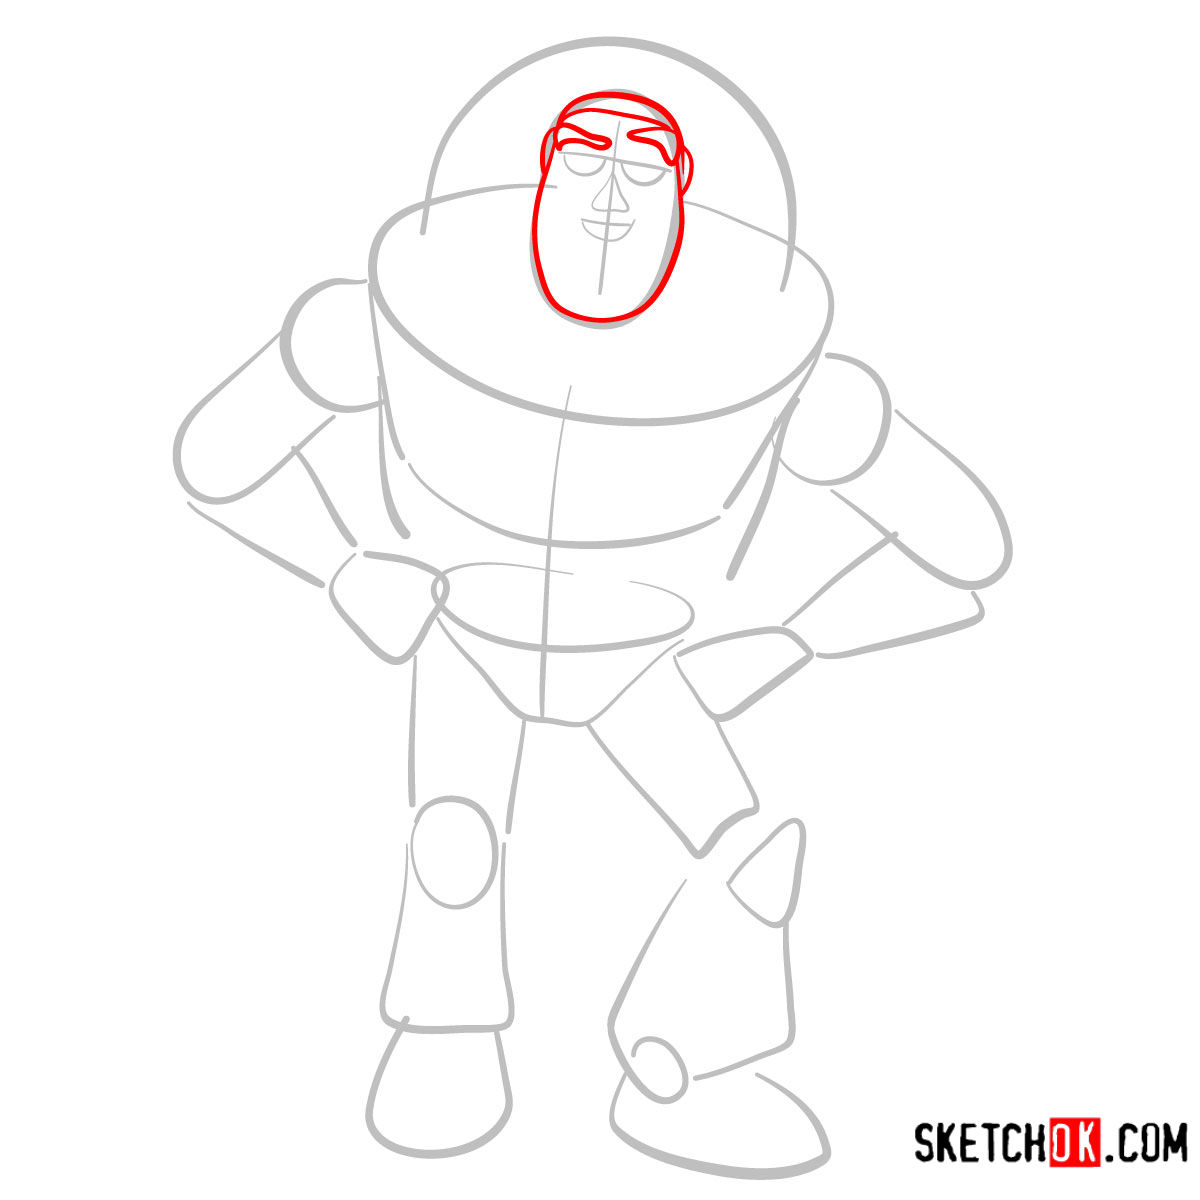 How to draw Buzz Lightyear | Toy Story - step 03